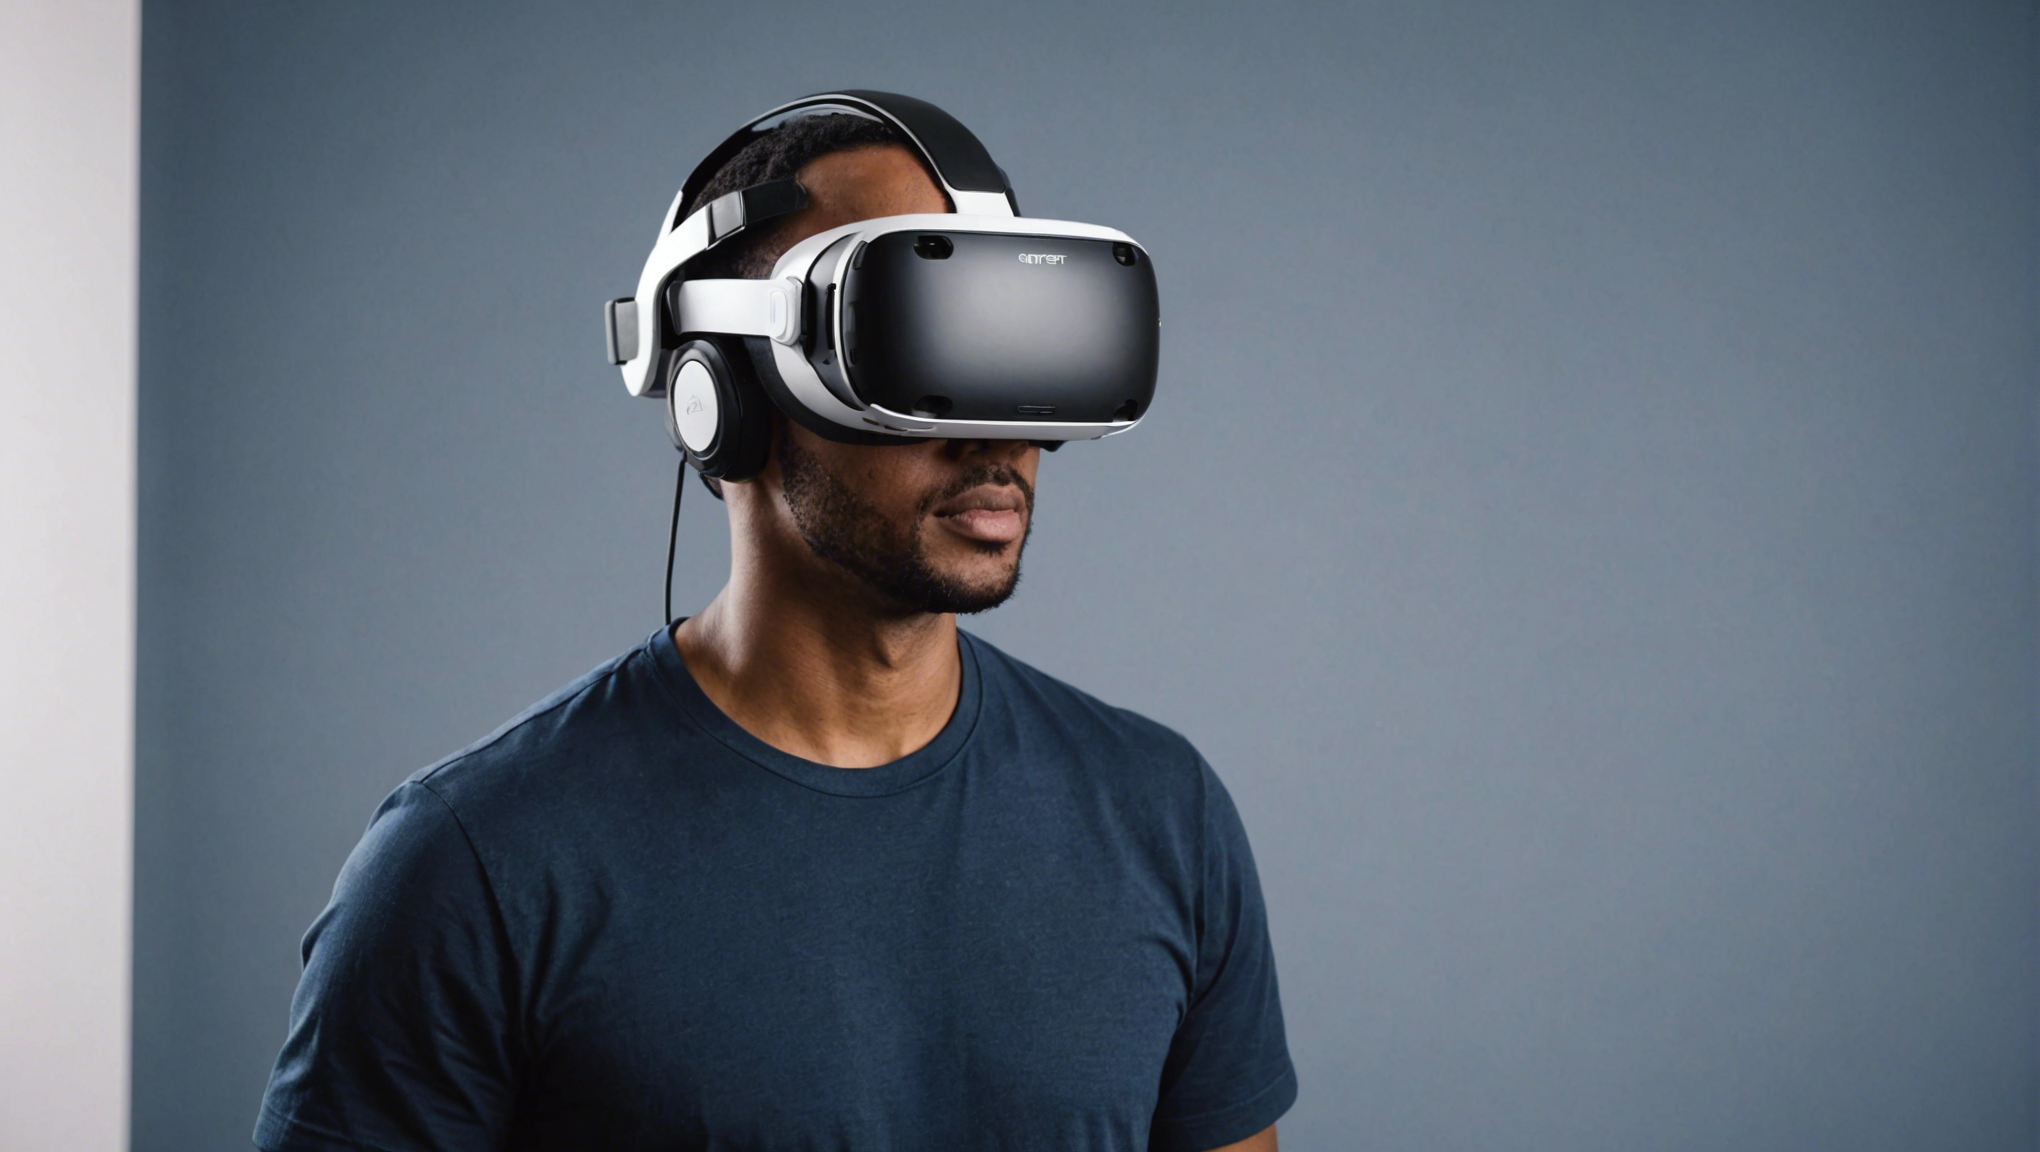 découvrez le casque vr meta quest 3, la nouvelle révolution de la réalité virtuelle qui repousse les limites de l'immersion et de l'expérience utilisateur. plongez dans un monde virtuel ultra réaliste avec le casque vr meta quest 3.